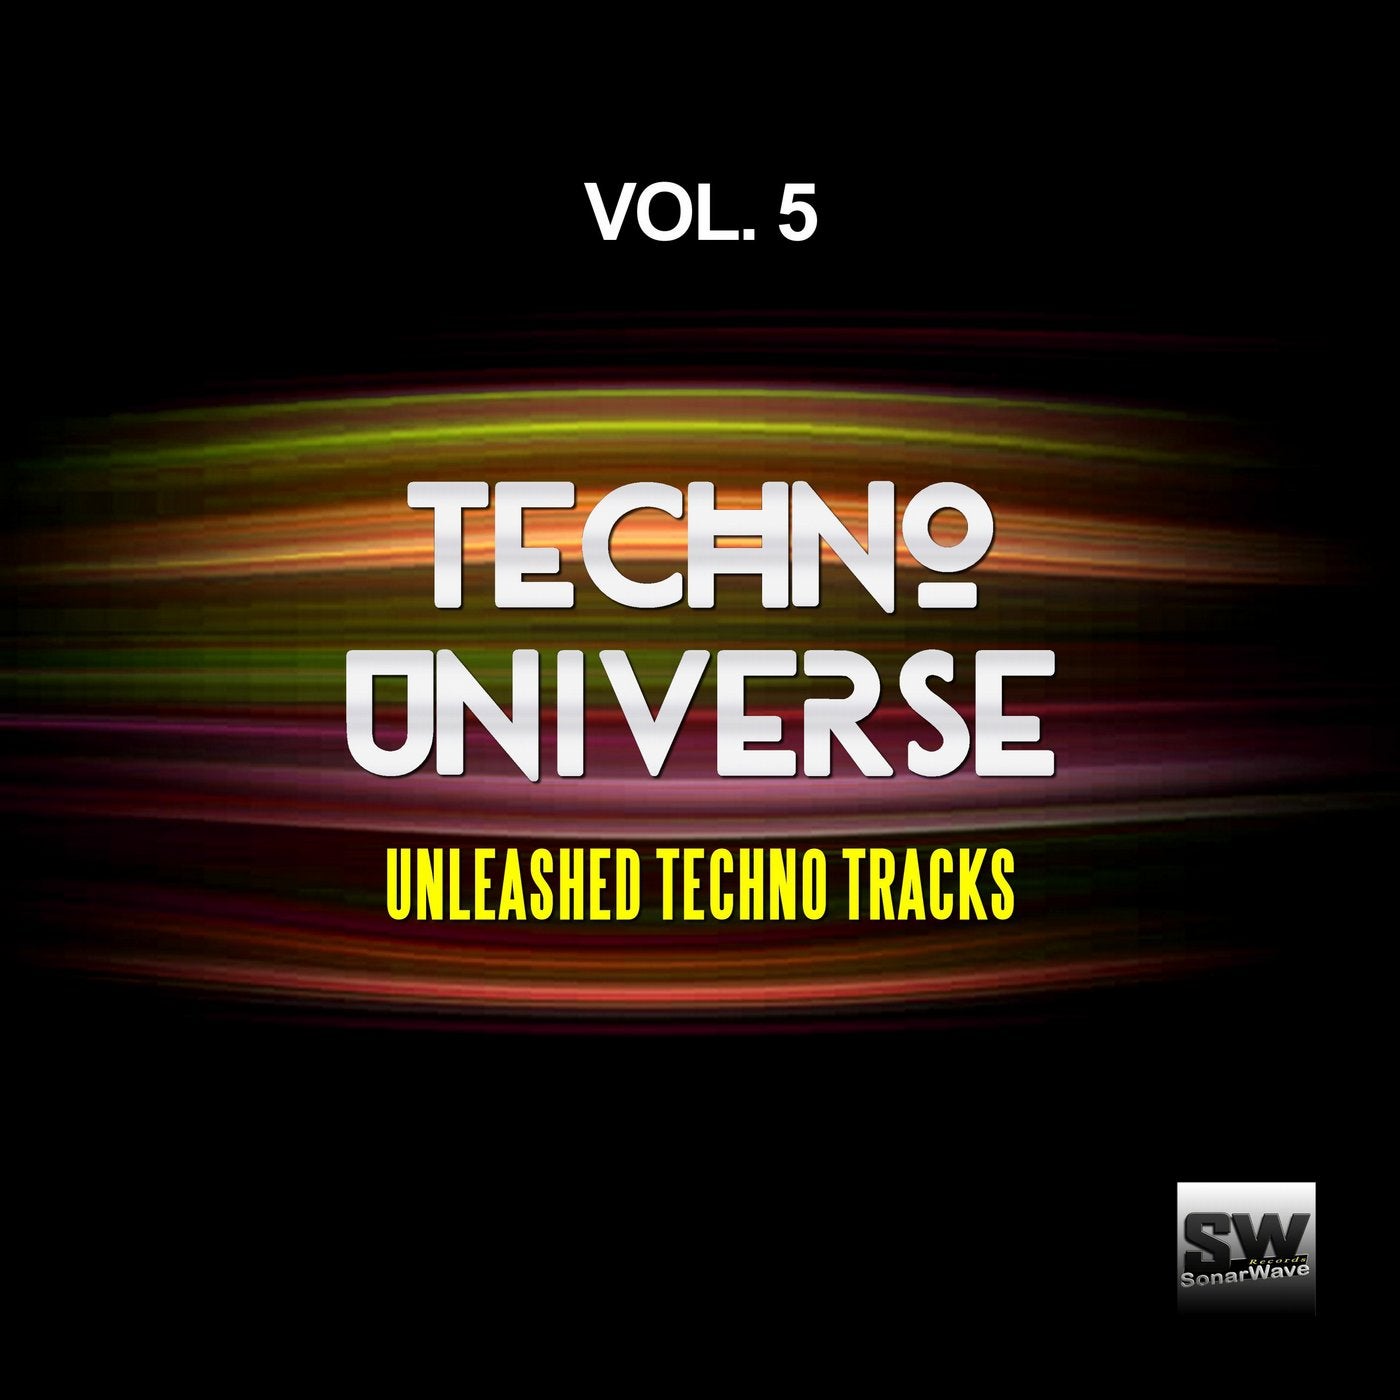 Techno Universe, Vol. 5 (Unleashed Techno Tracks)